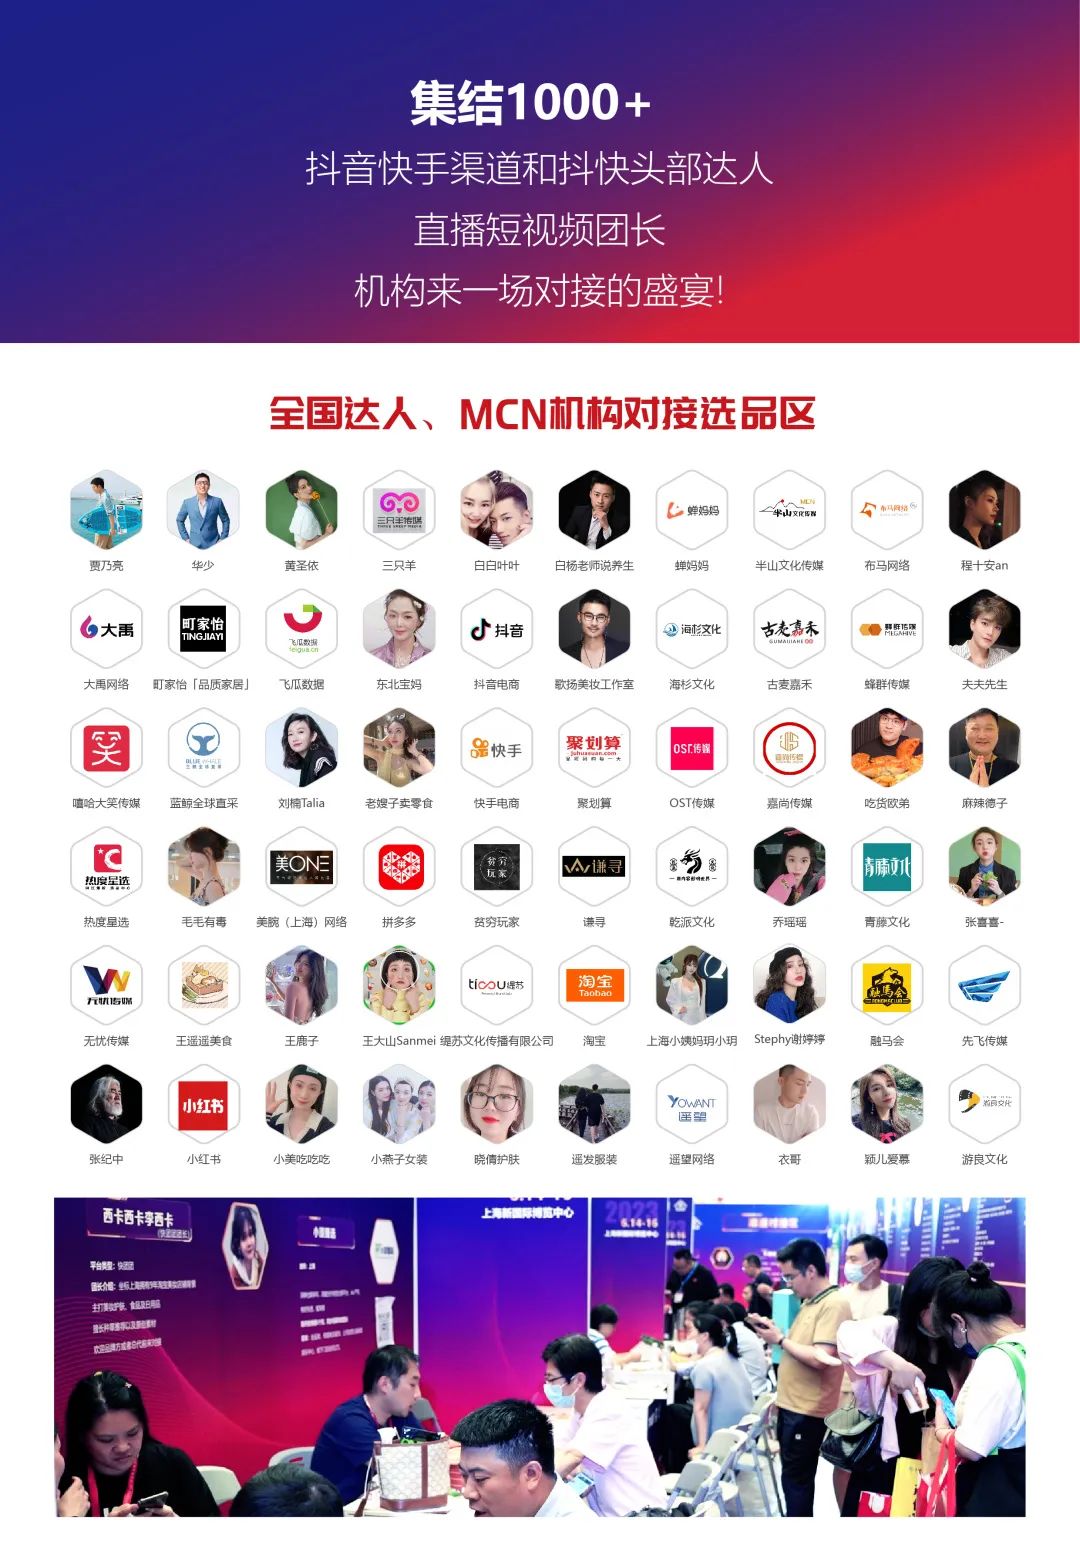 上海电商展会第六届上海国际网红品牌博览会